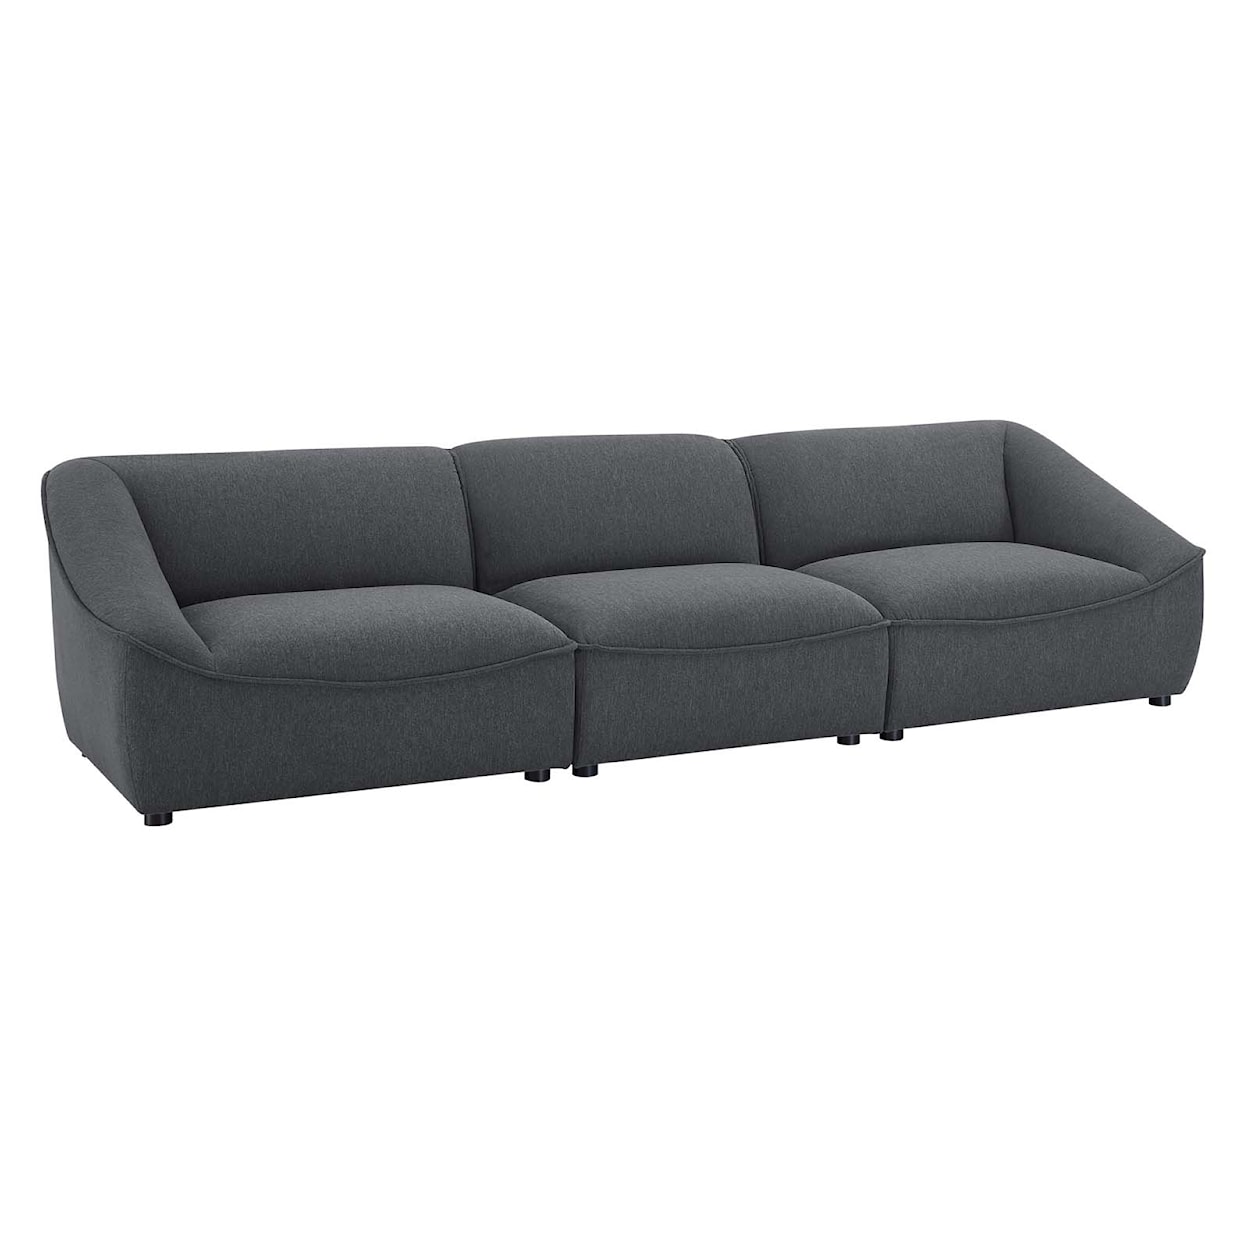 Modway Comprise 3-Piece Sofa